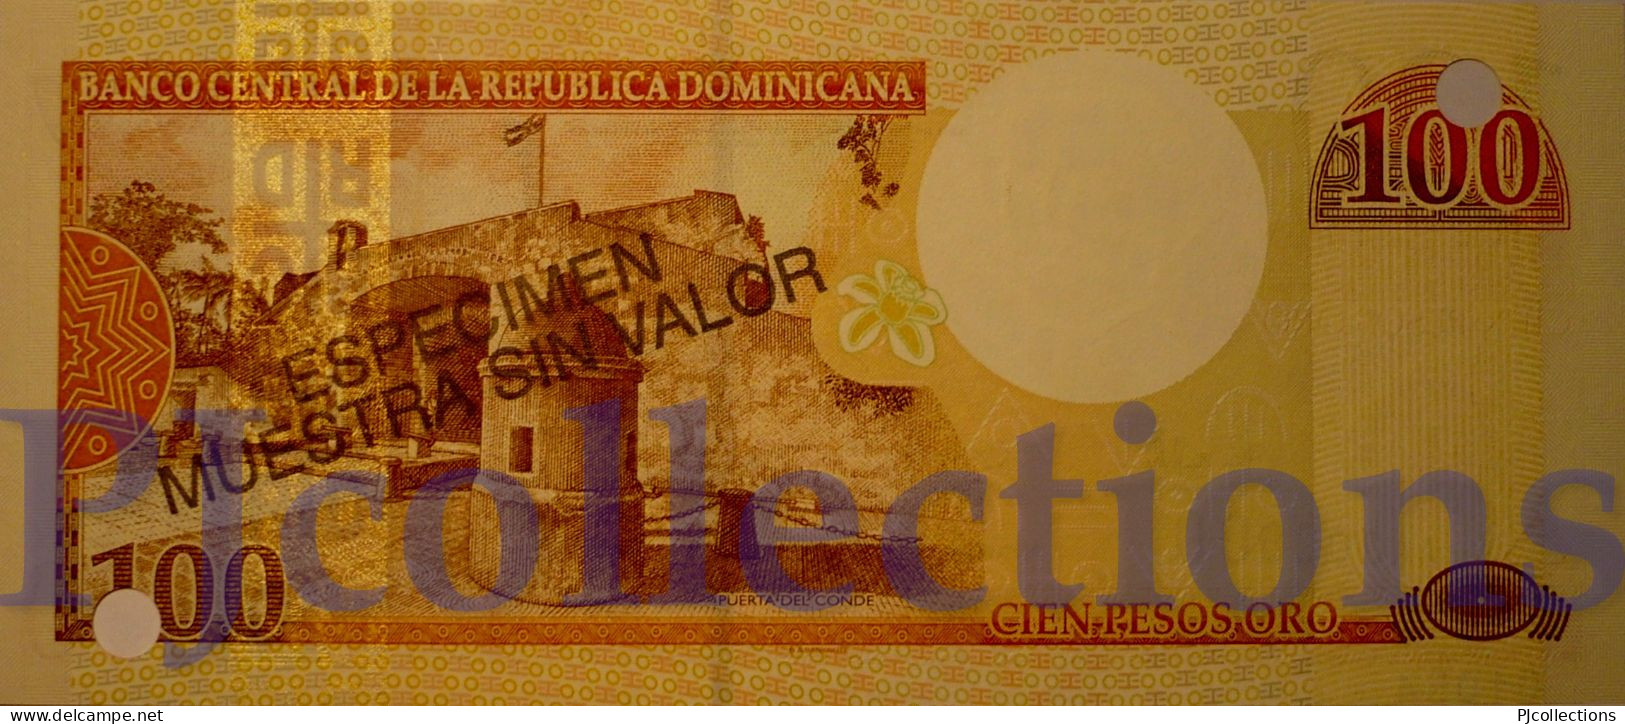 DOMINICAN REPUBLIC 100 PESOS ORO 2000 PICK 167s1 SPECIMEN UNC NUMBER "01054"" - Dominikanische Rep.